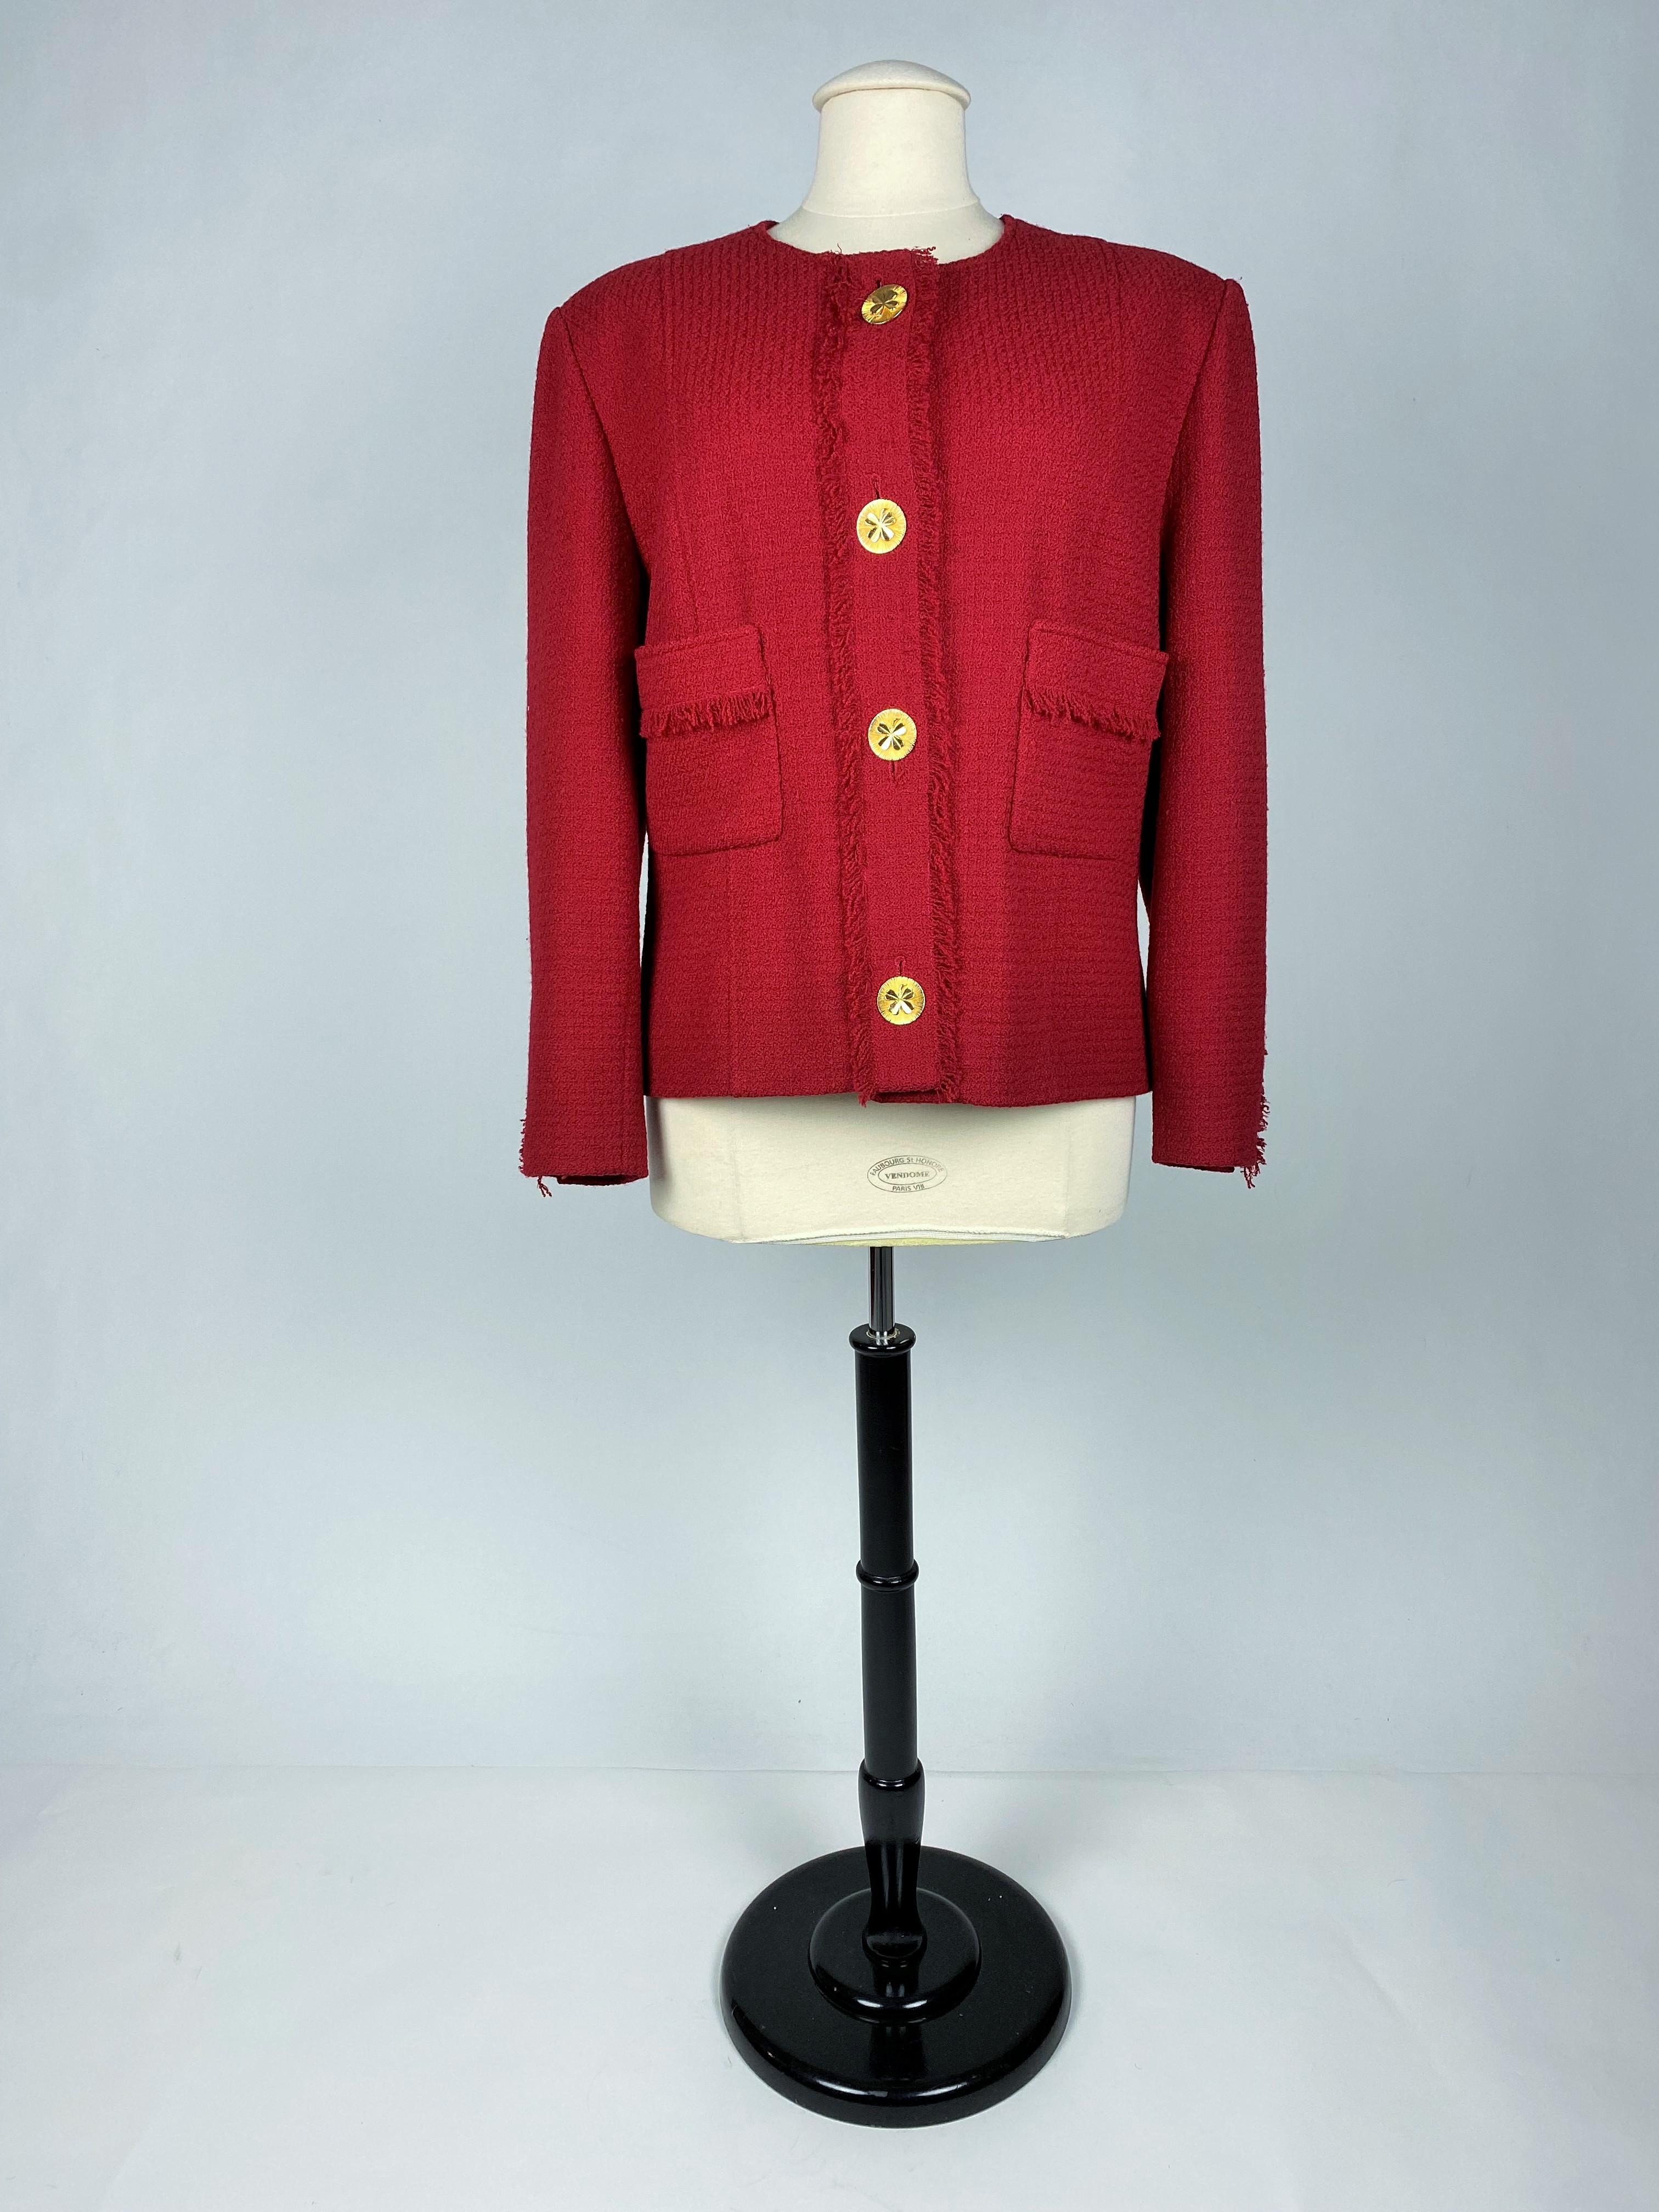 Circa 1995-2000
France

Élégante veste de costume de la boutique Chanel réalisée sous la Directional de Karl Lagerfed en laine Mohair rouge et datant de la fin des années 1990. Veste droite avec deux poches à rabats frangés et rappel de la patte de